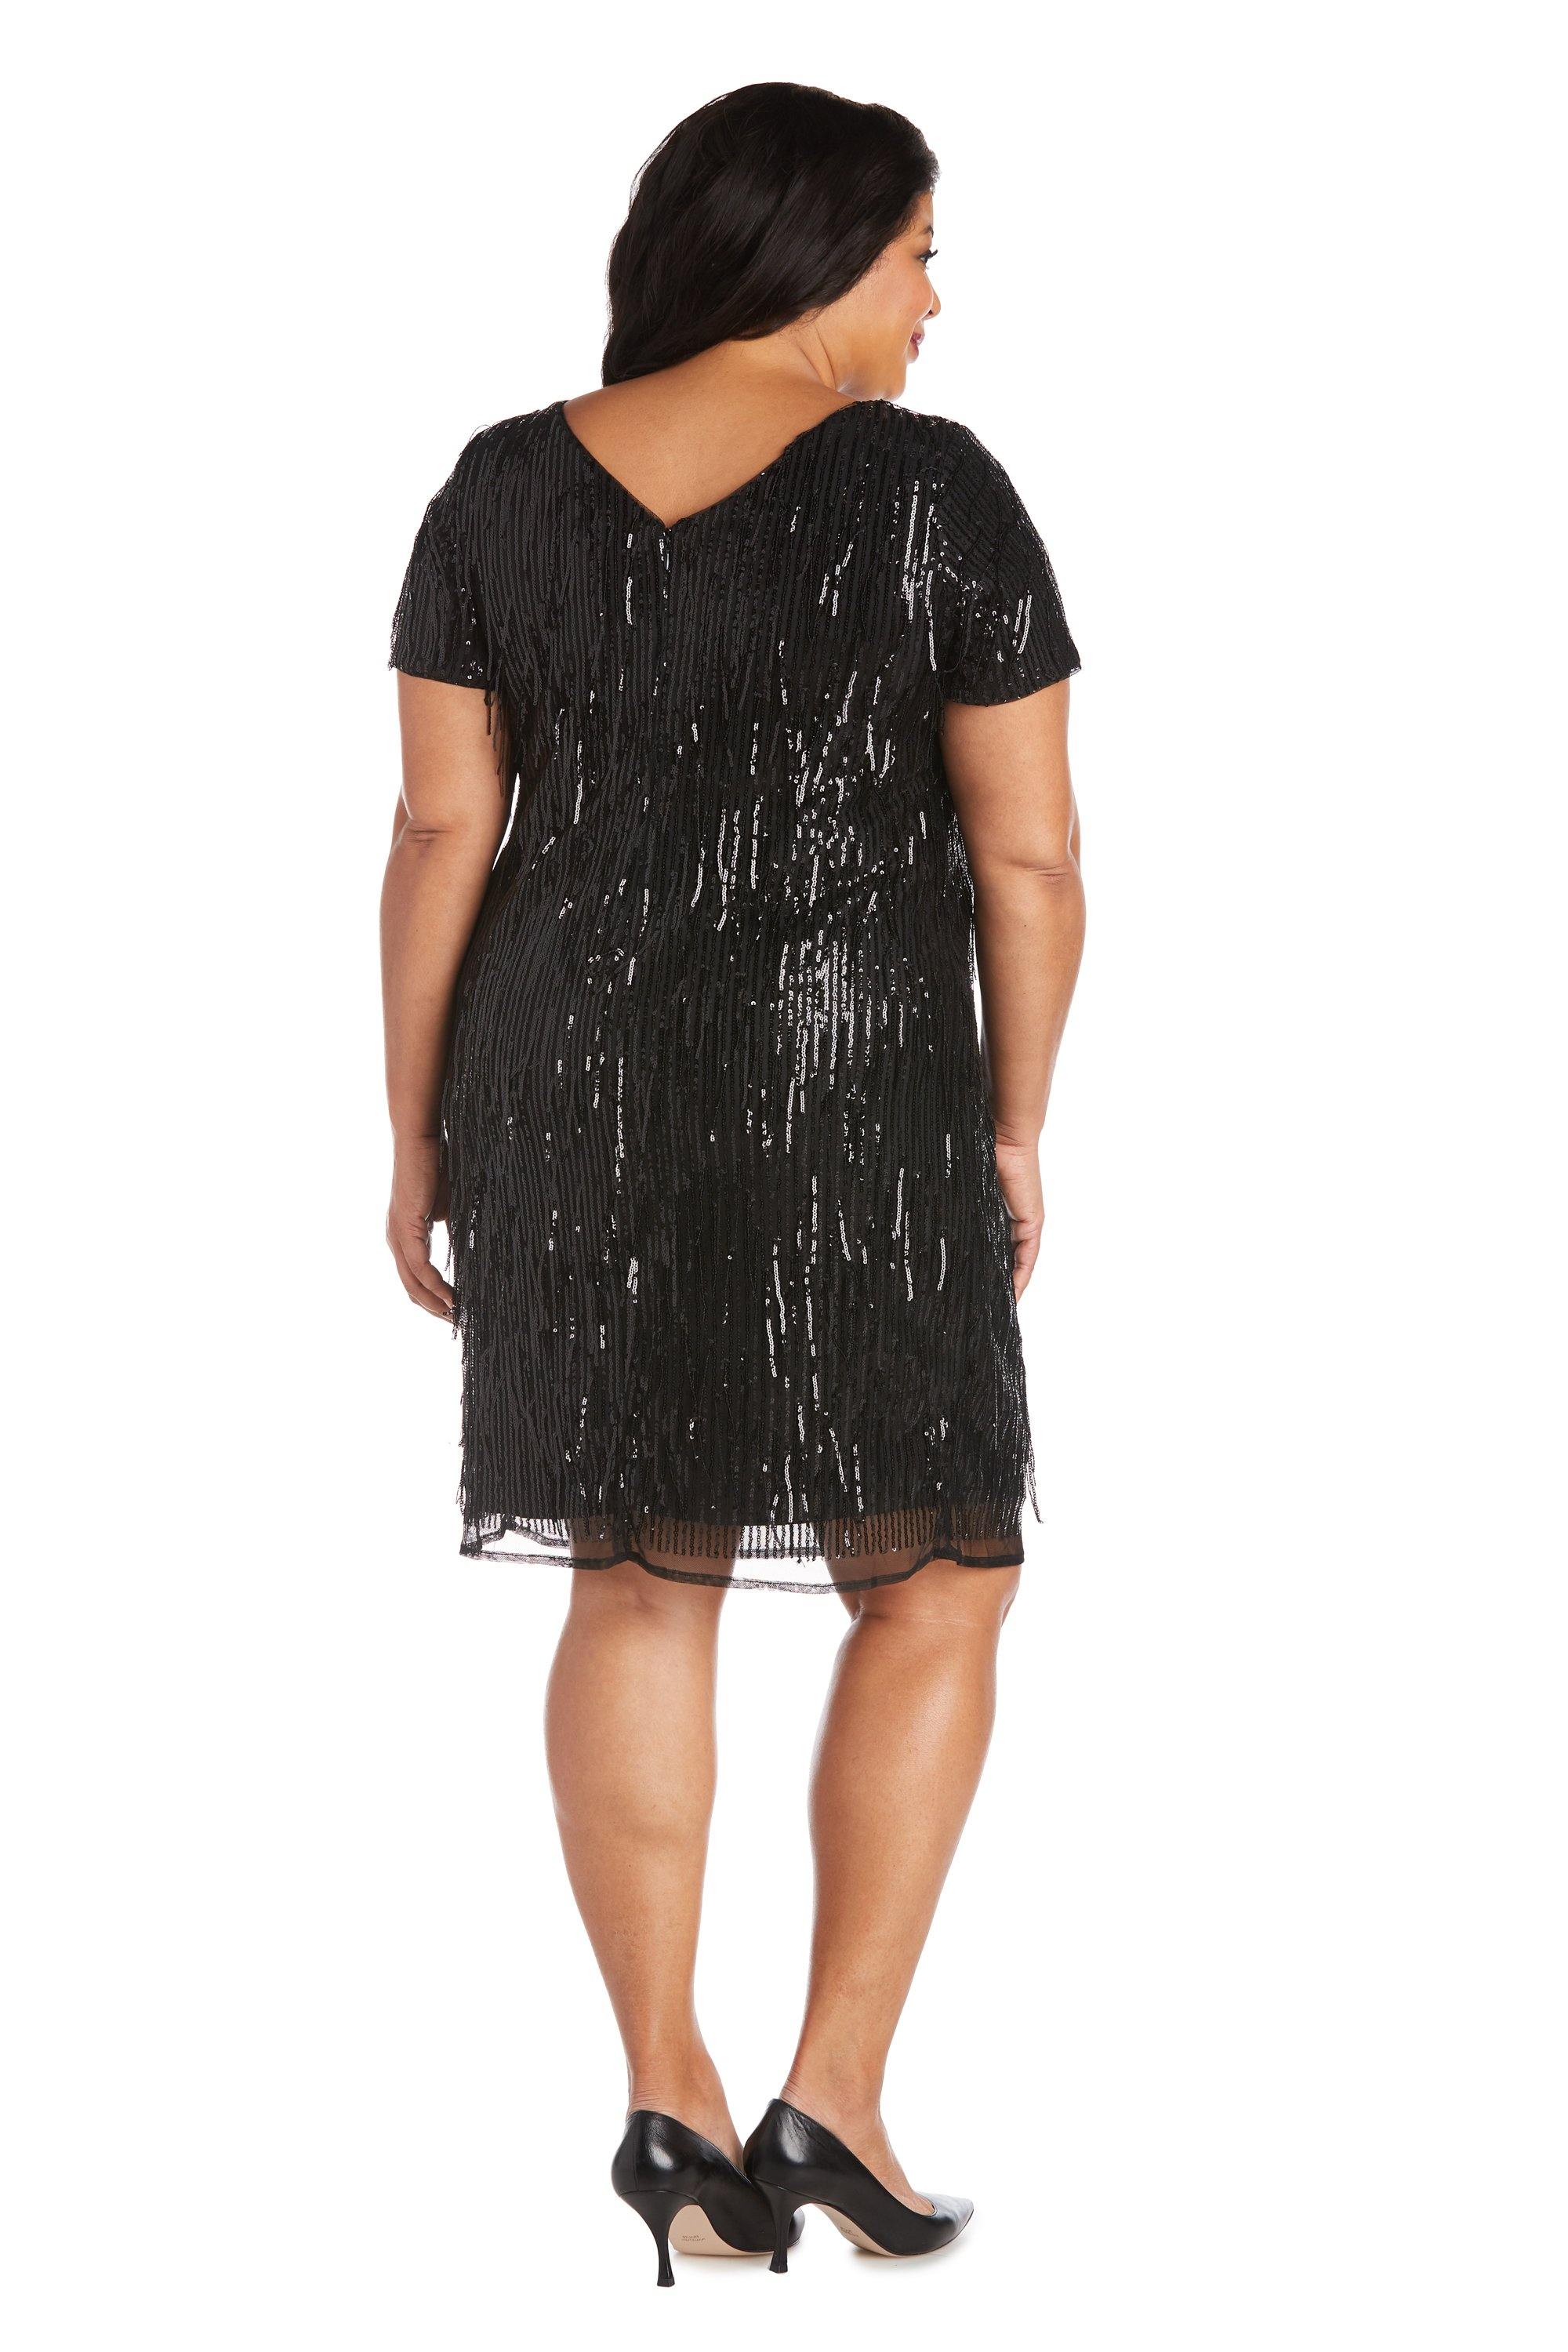 R&M Richards Short Plus Size Sequins Dress Sale - The Dress Outlet